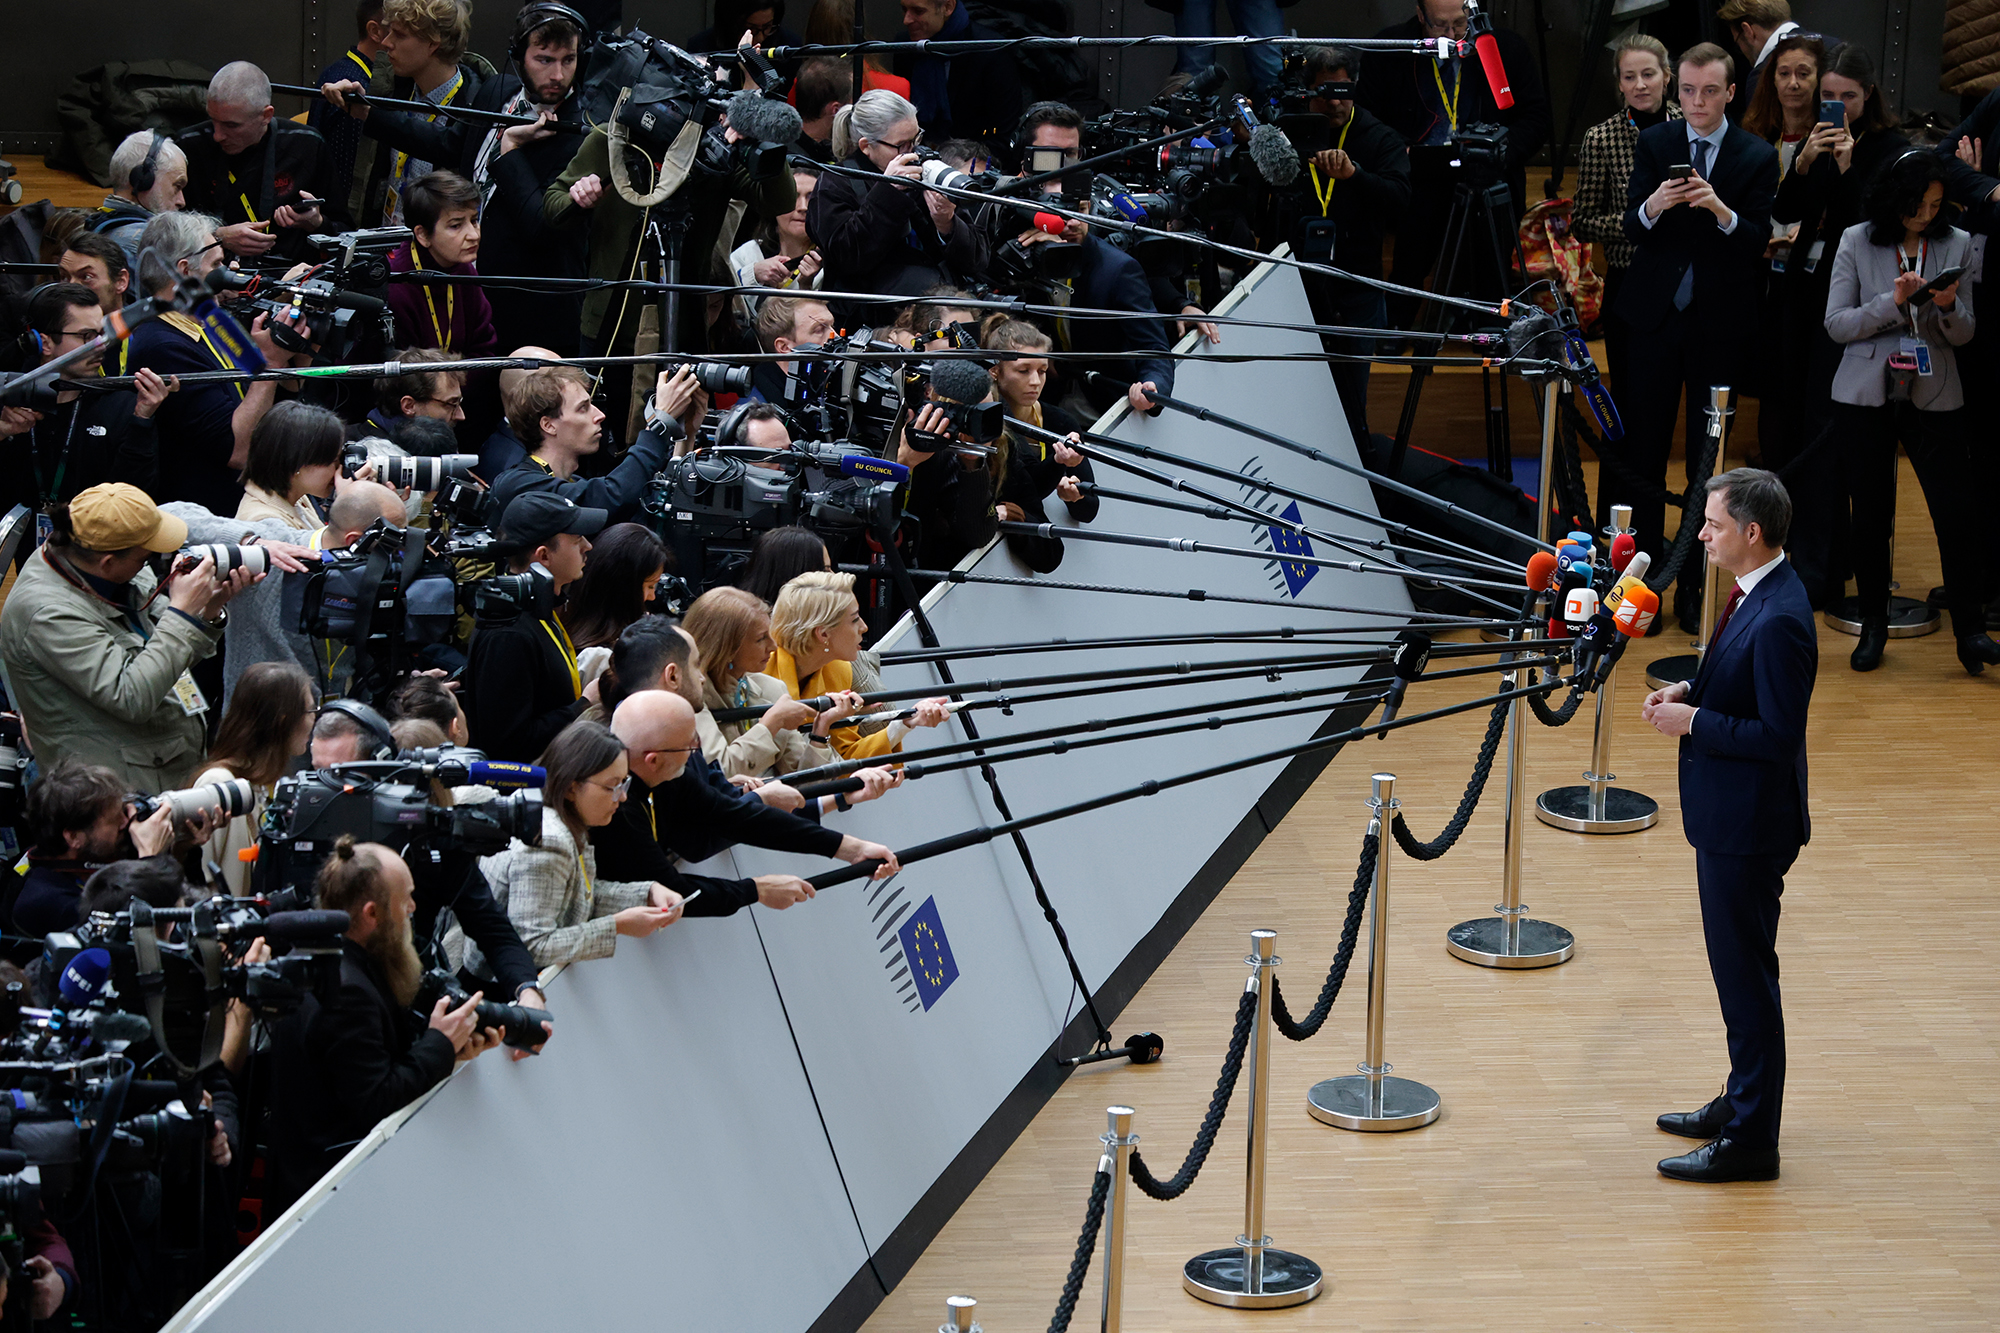 Premierminister Alexander De Croo bei einem Presse-Statement zu Beginn des EU-Gipfels (Bild: Nicolas Maeterlinck/Belga)